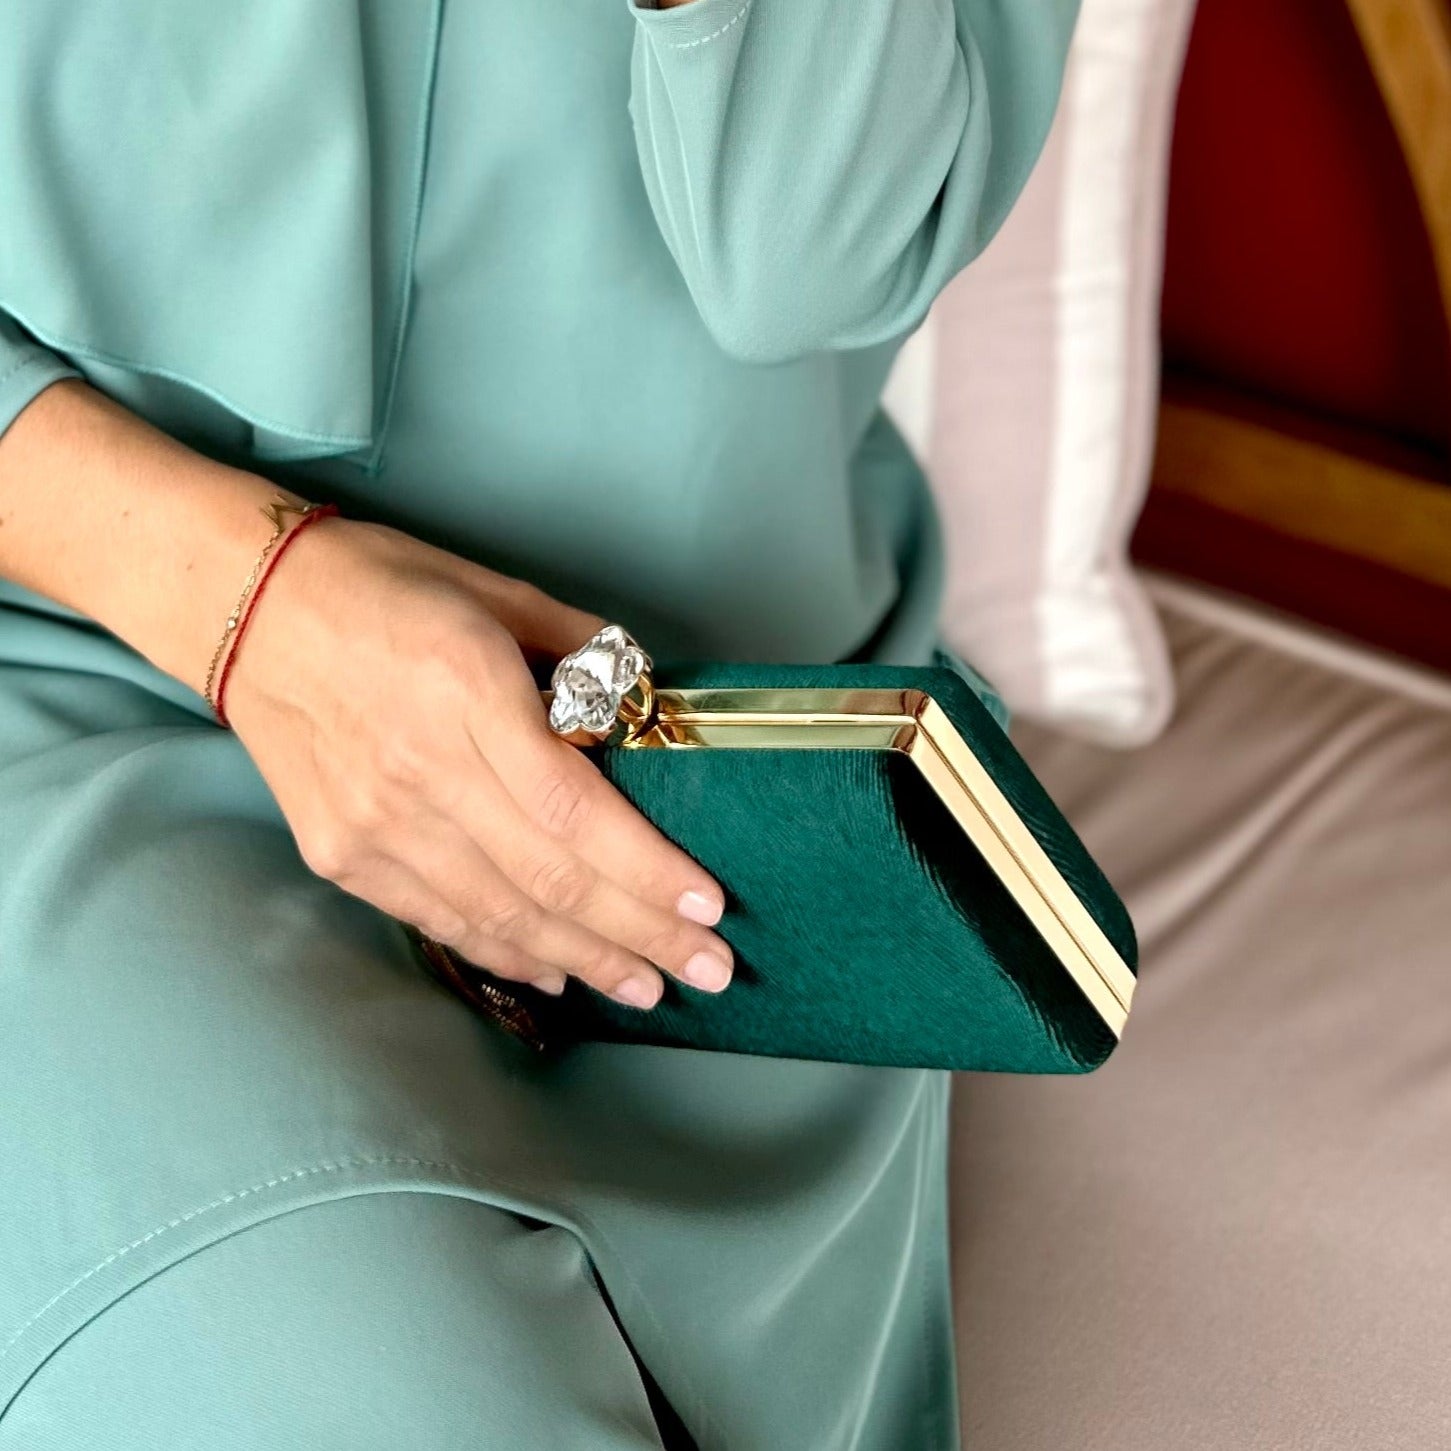 bolso verde oliva elegante boda. Bolso dorado clutch cartera para eventos original.